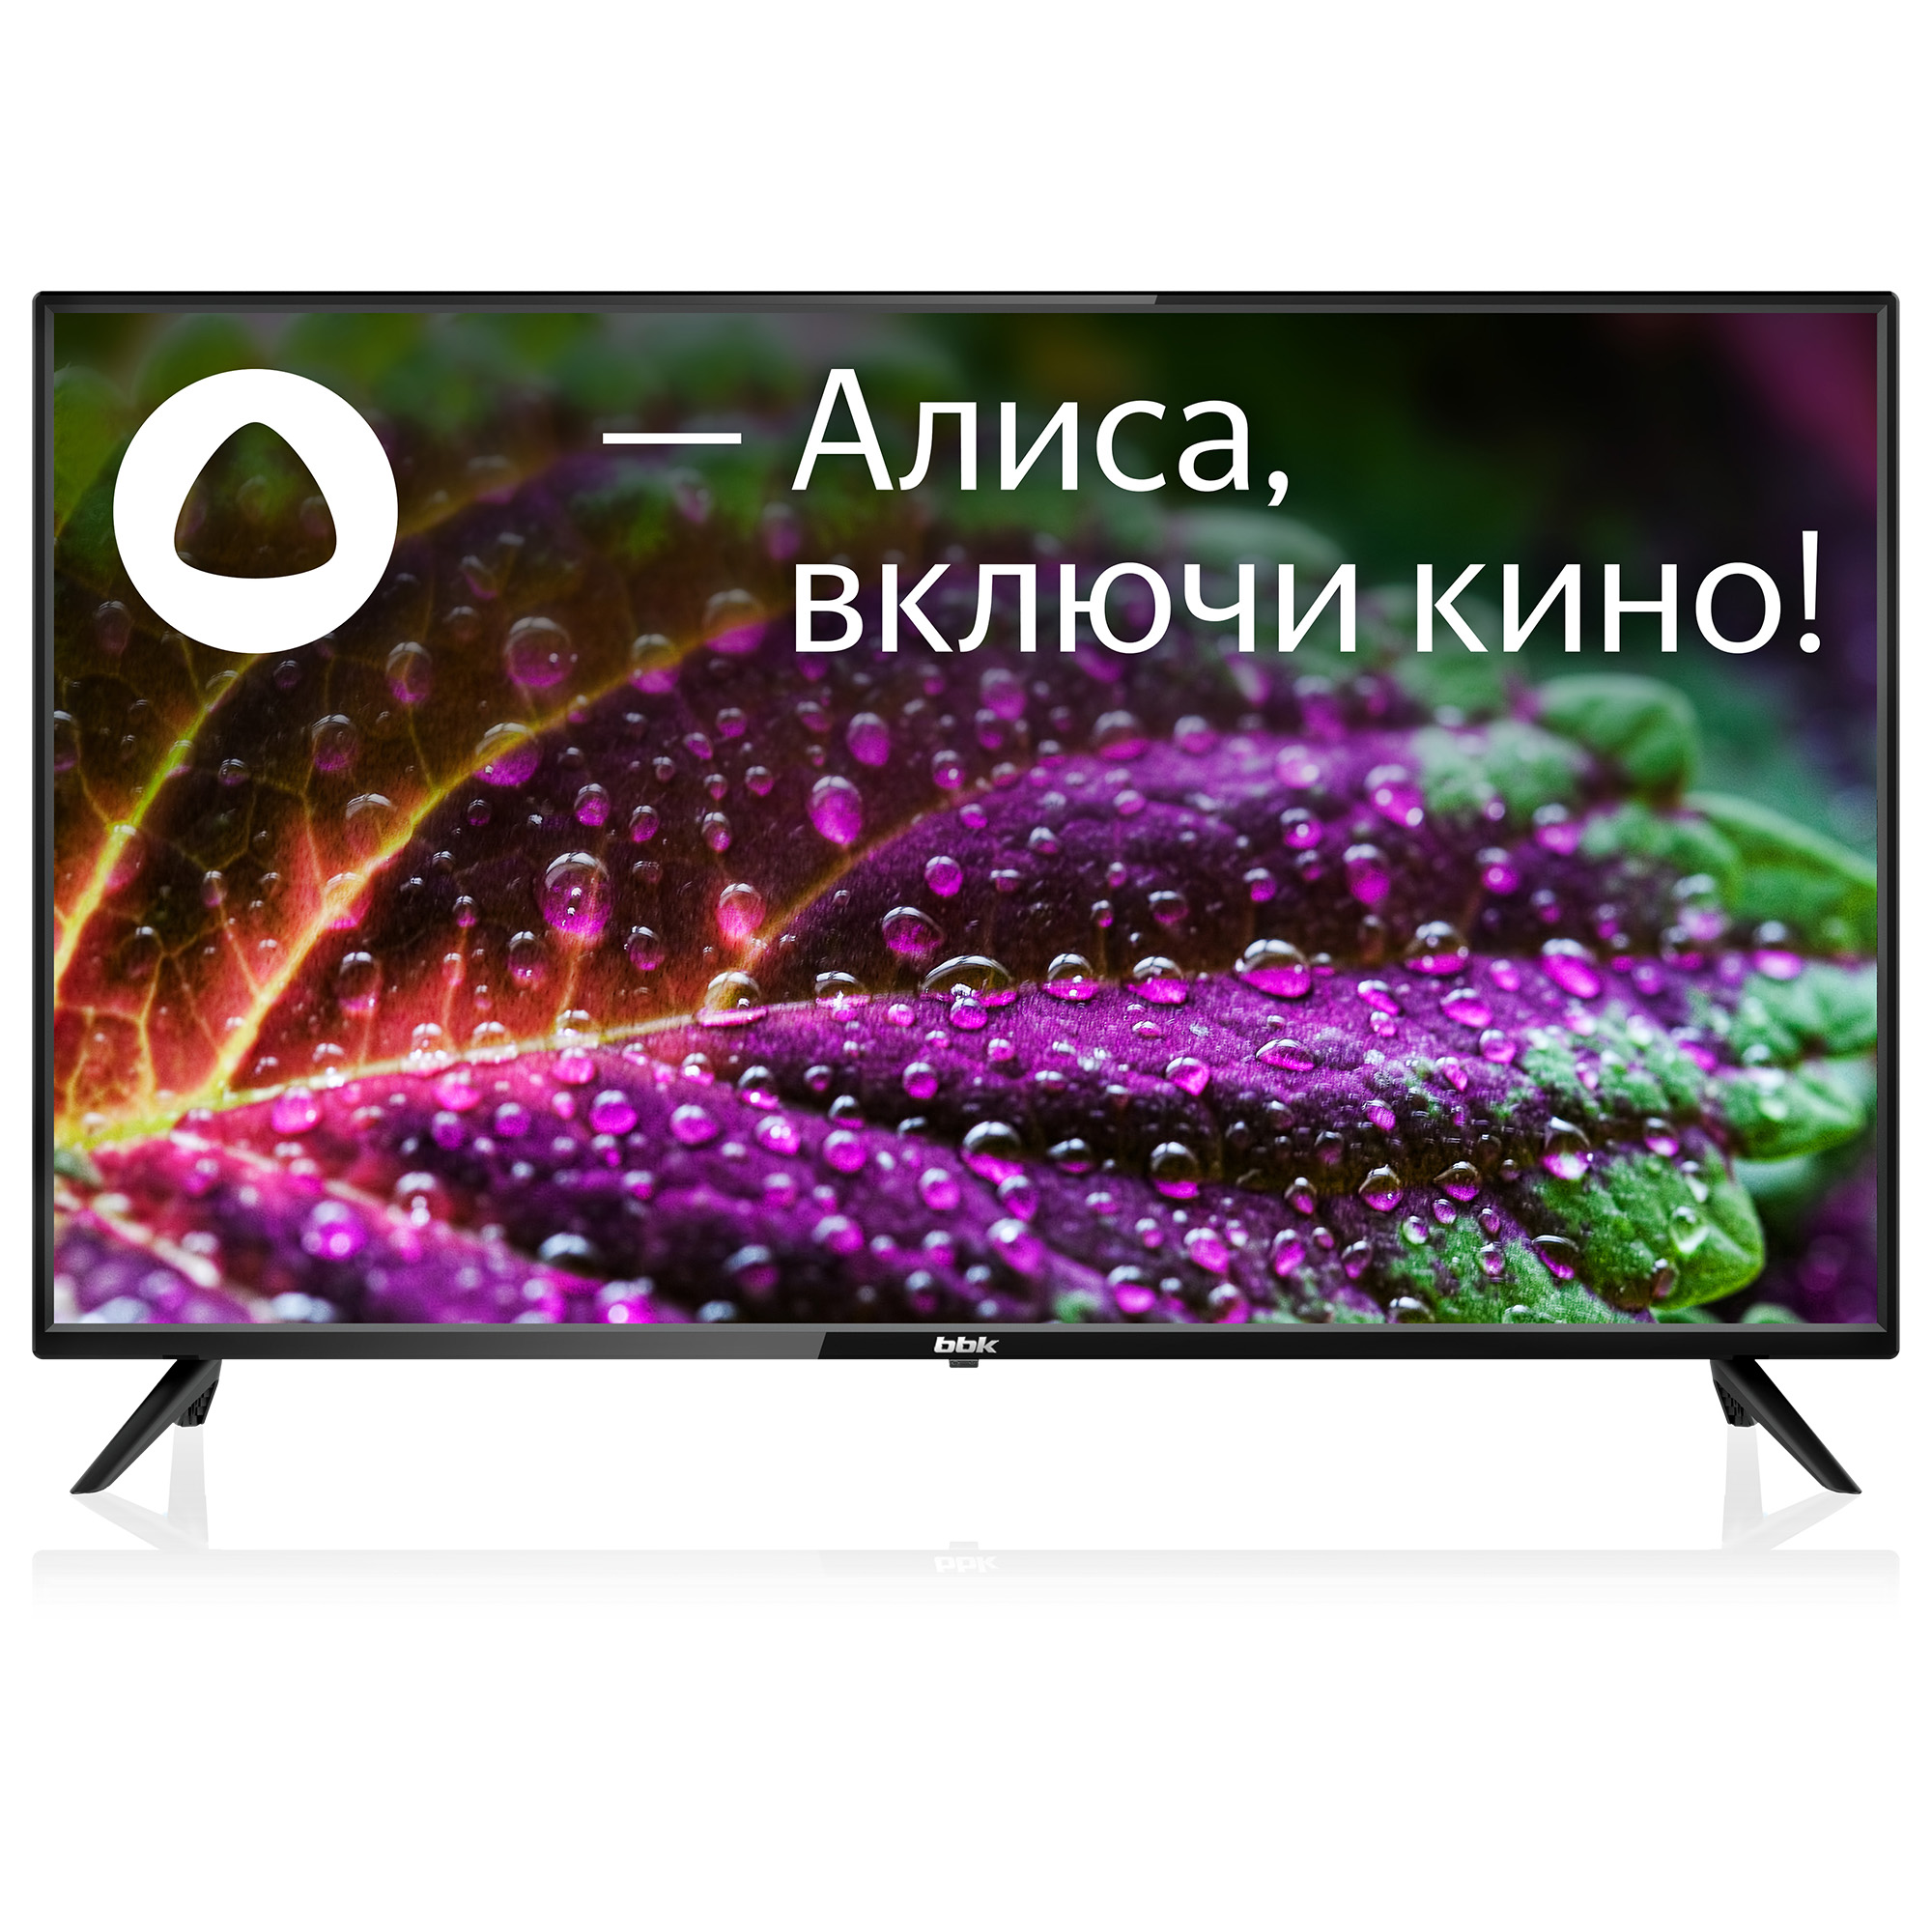 Телевизор bbk 42lex